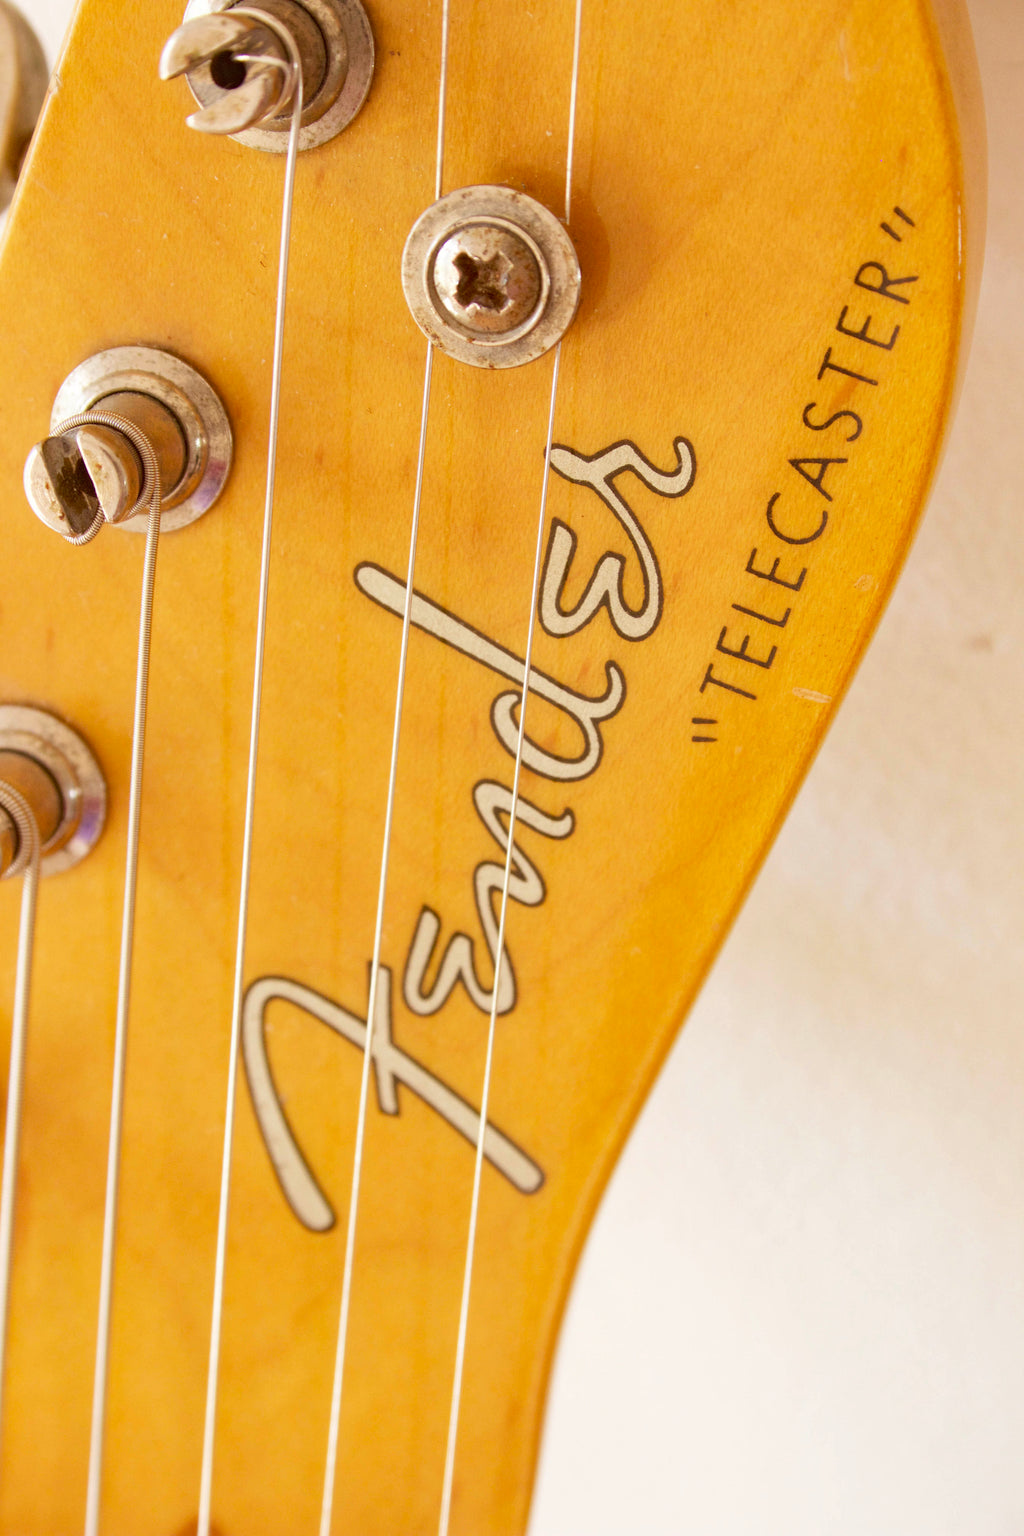 Fender '52 Reissue Telecaster TL52-70US Vintage Natural 1997-00